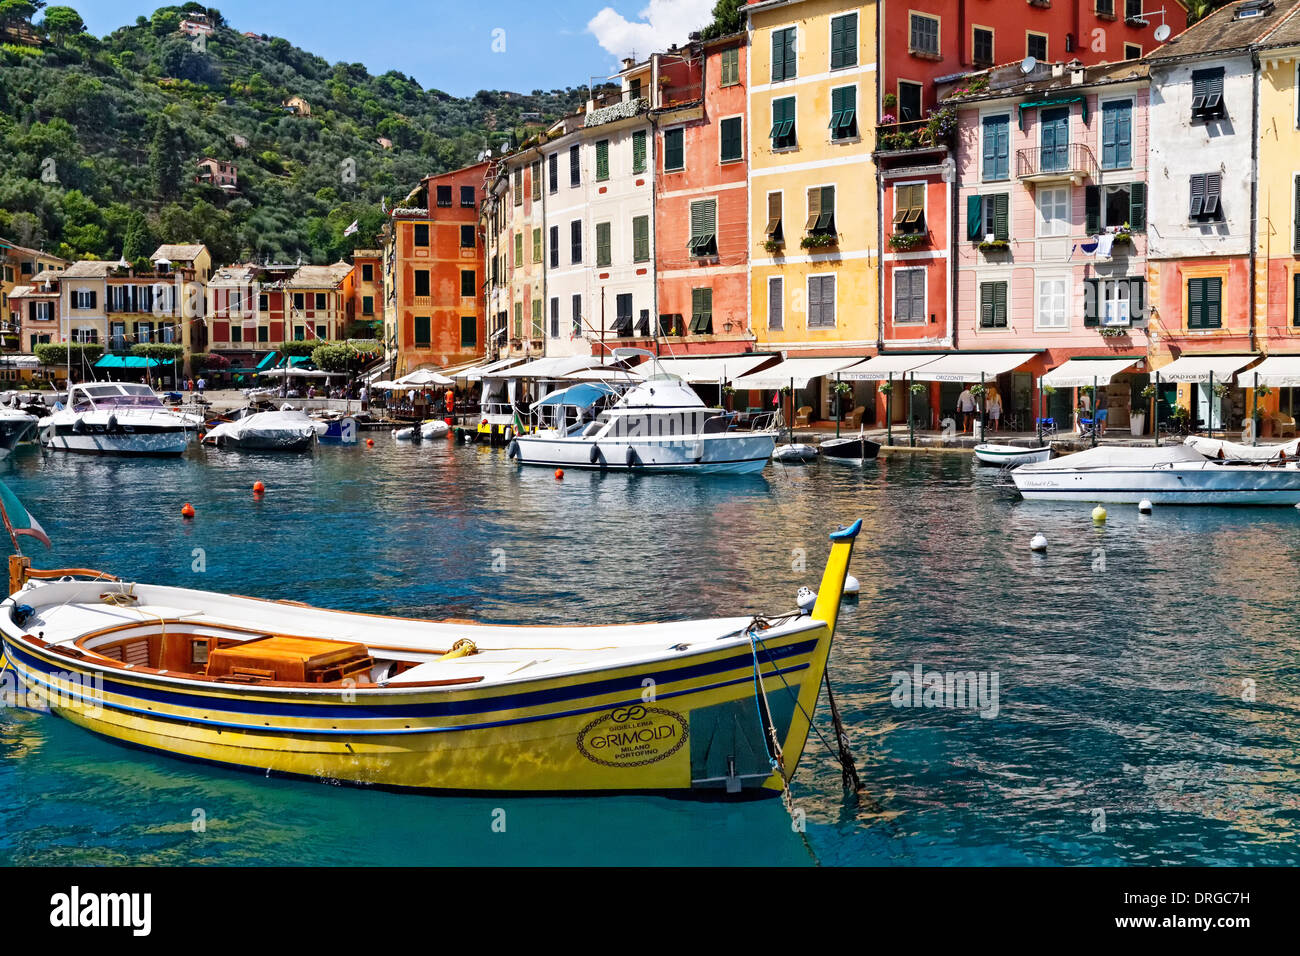 Vue de l'arrière-port de Portofino avec de petits bateaux, ligurie, italie Banque D'Images